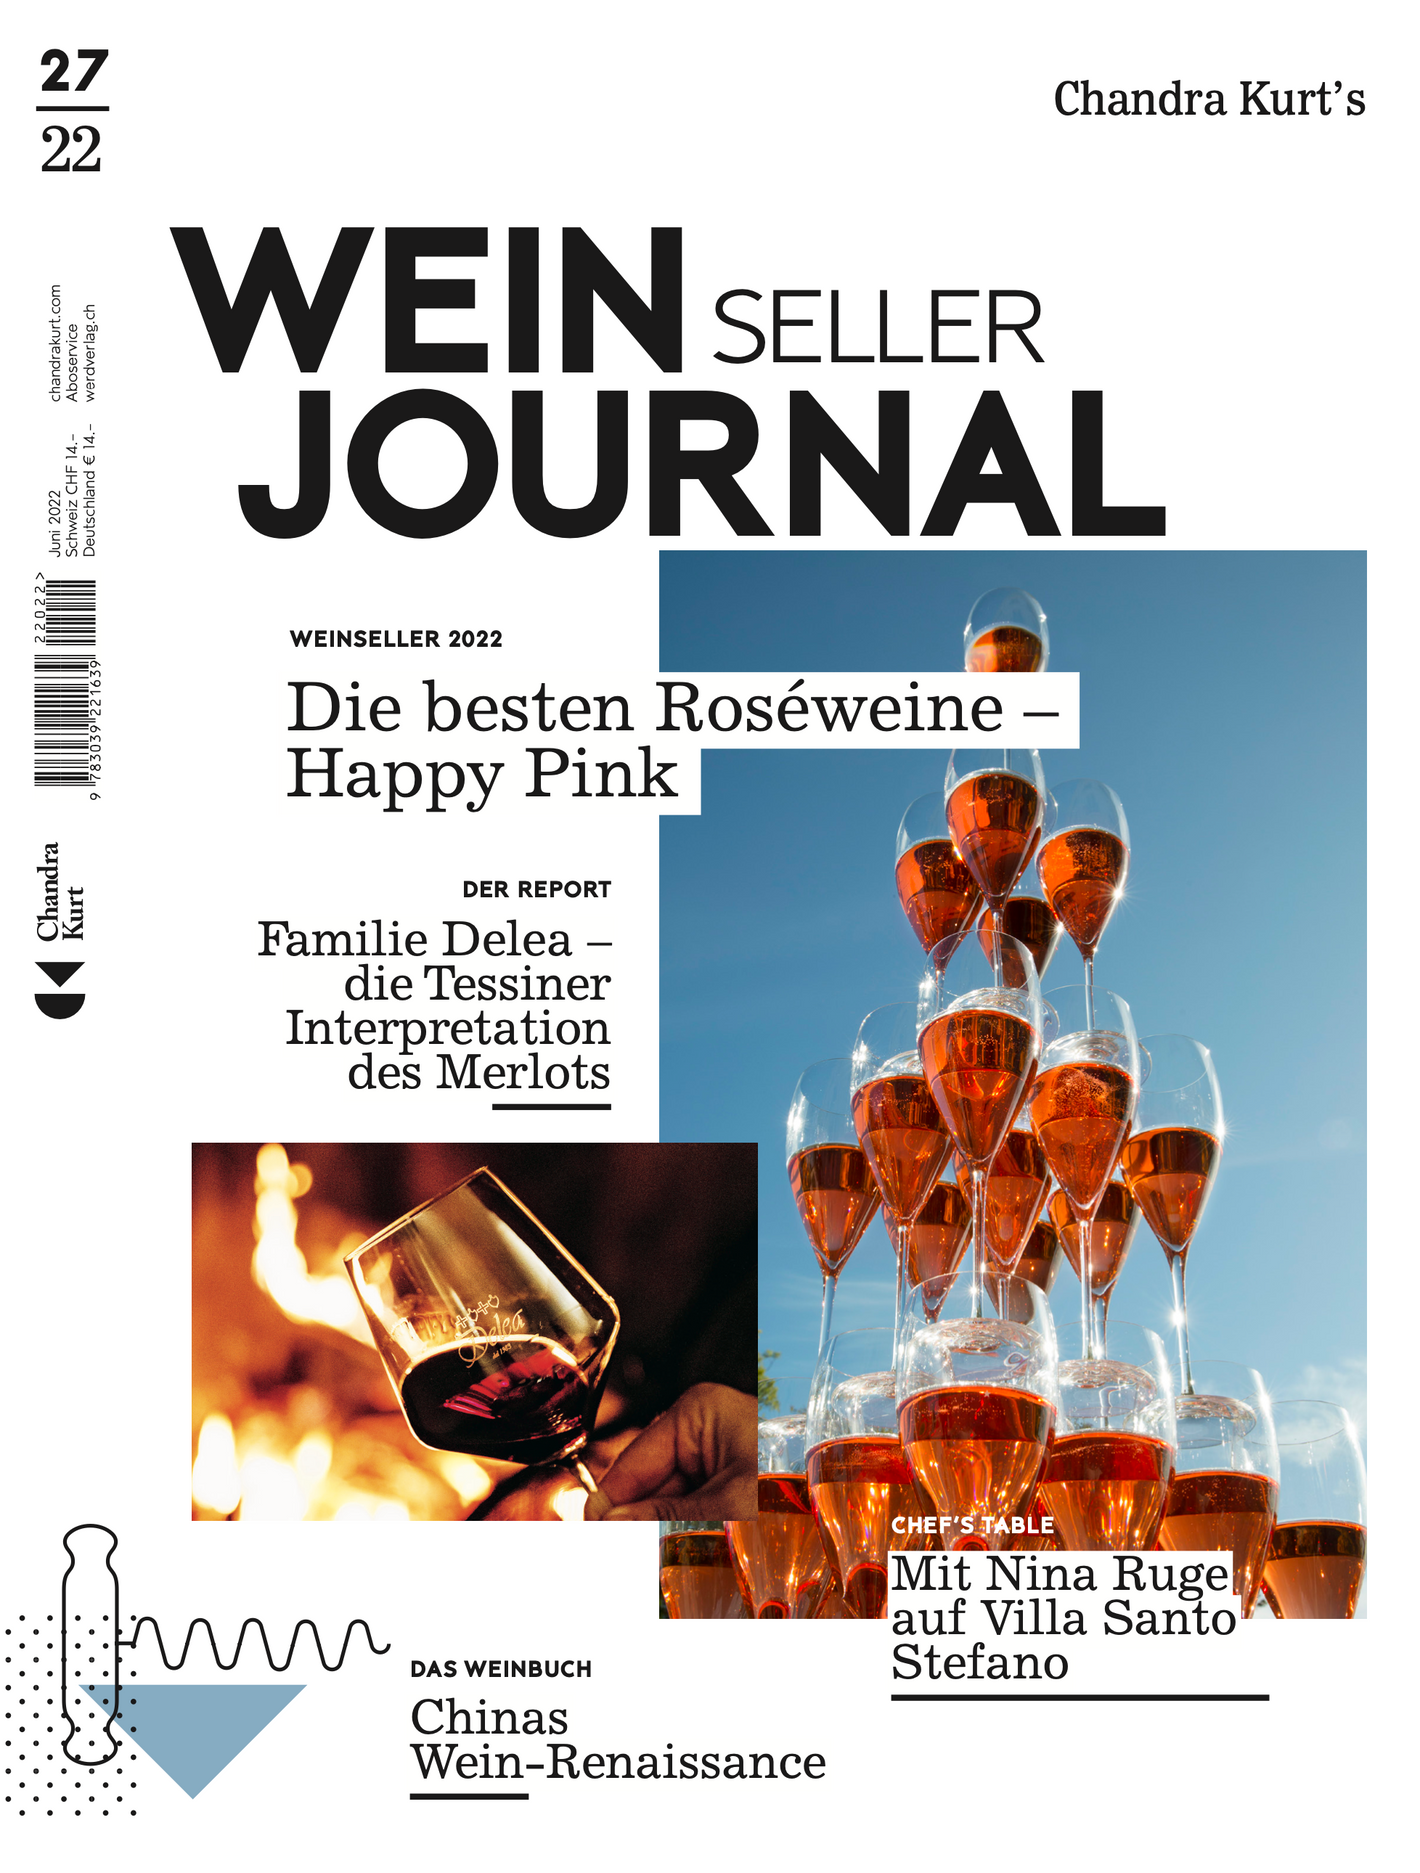 Weinseller Journal 27/22 - WEBER VERLAG